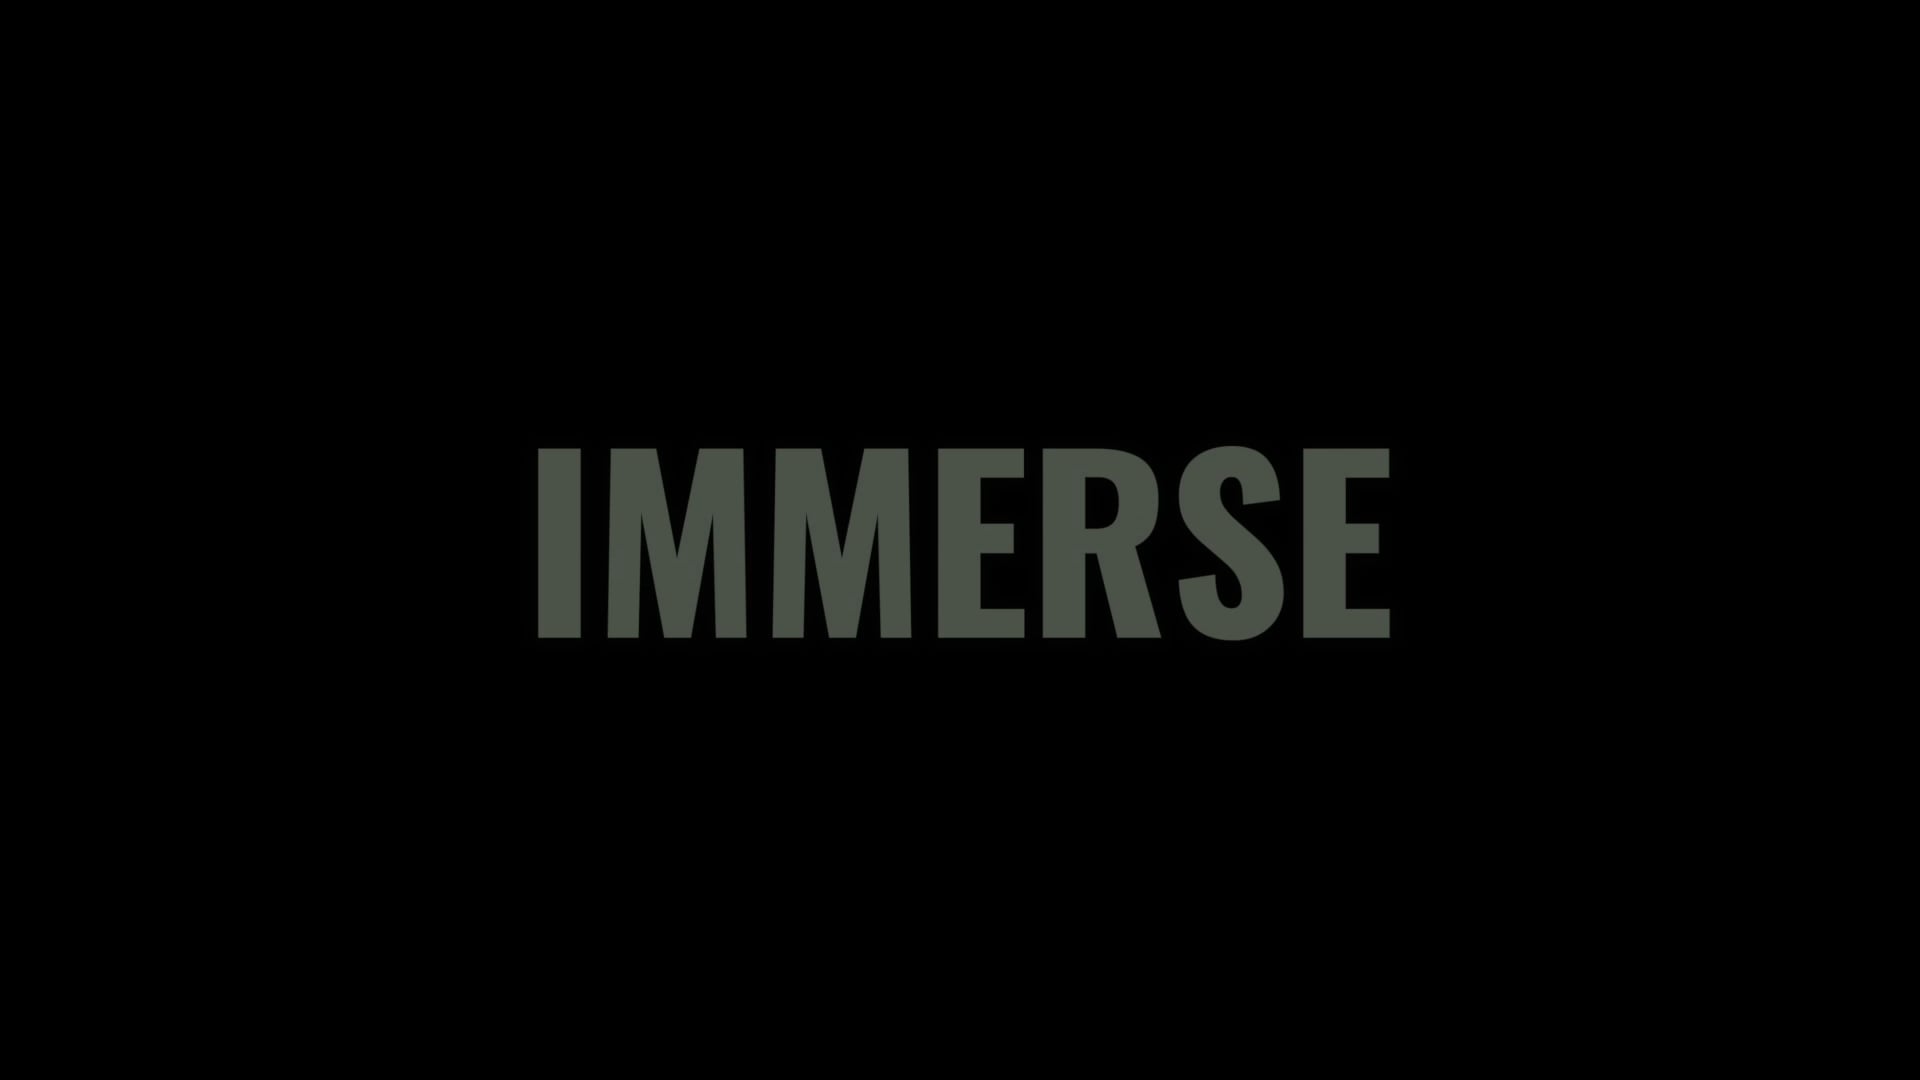 Immerse – Movie